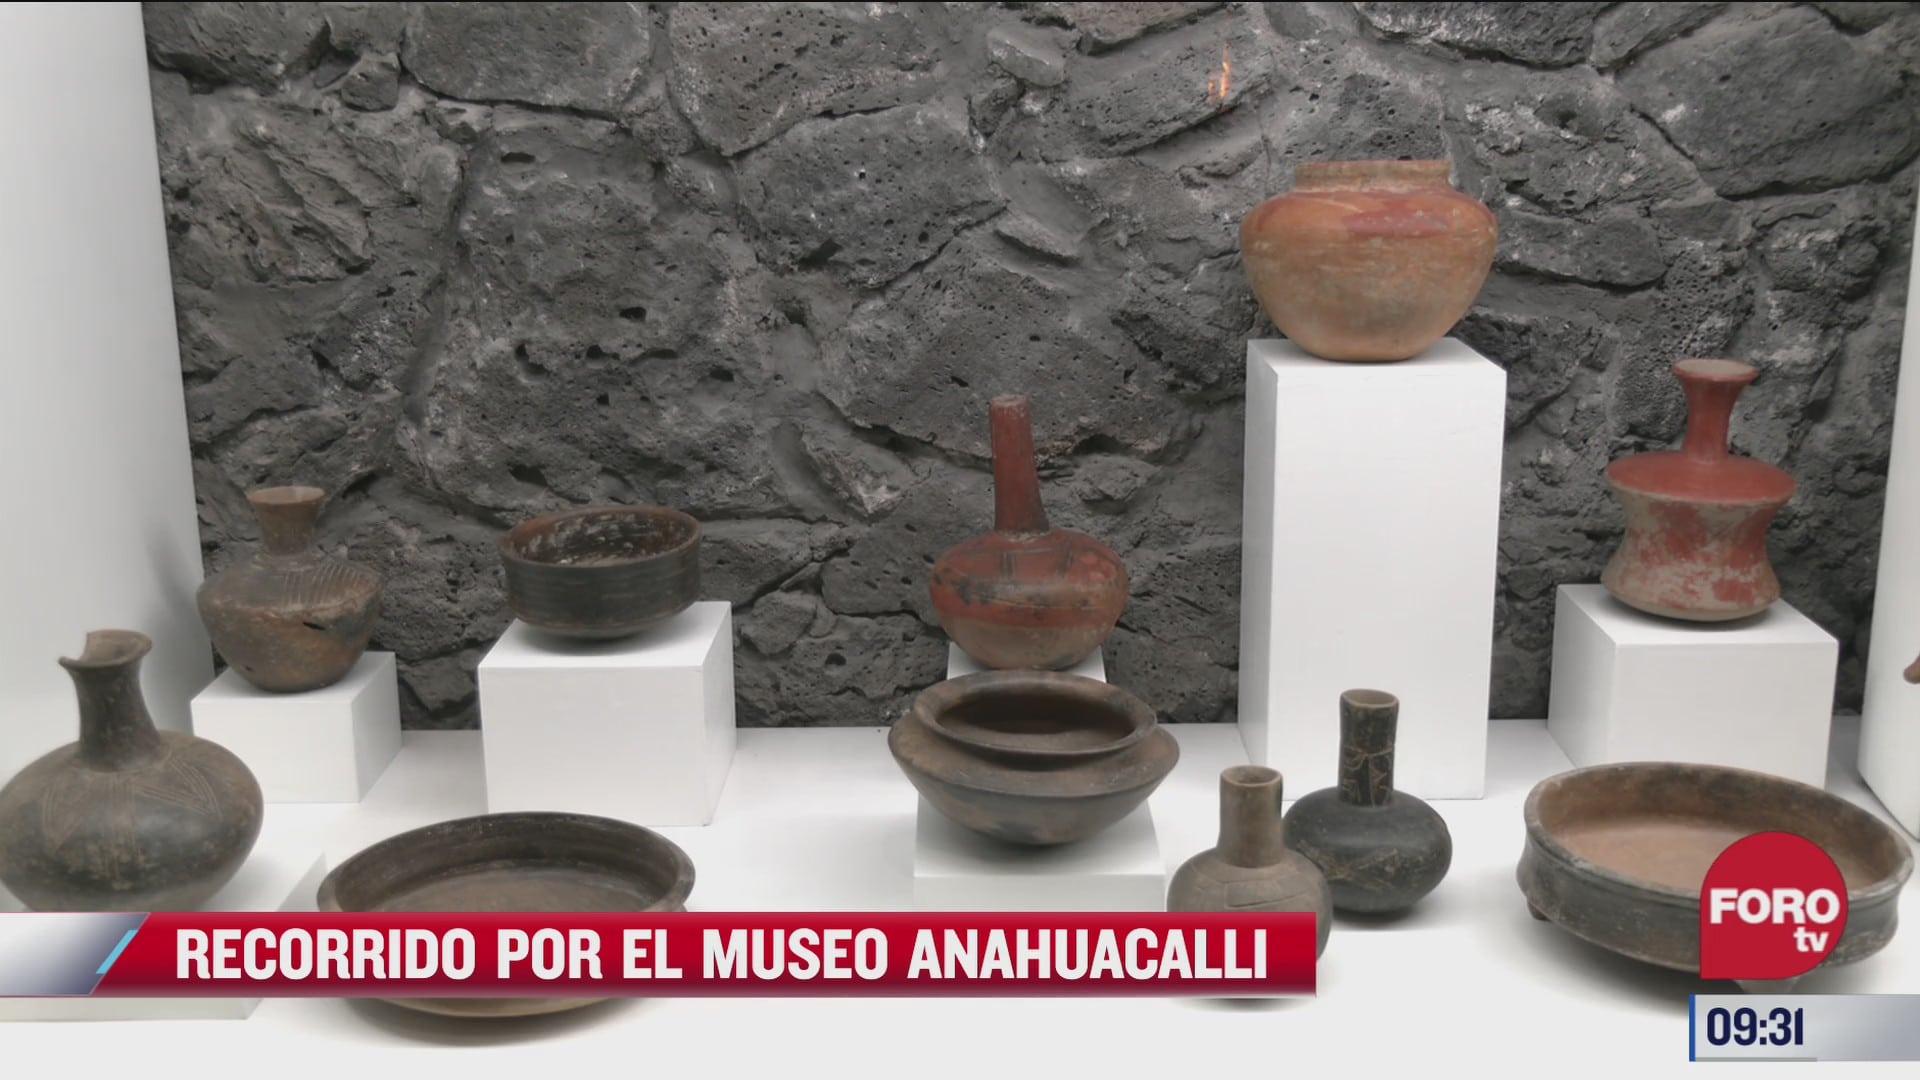 museo anahuacalli ofrece un abanico de actividades unicas